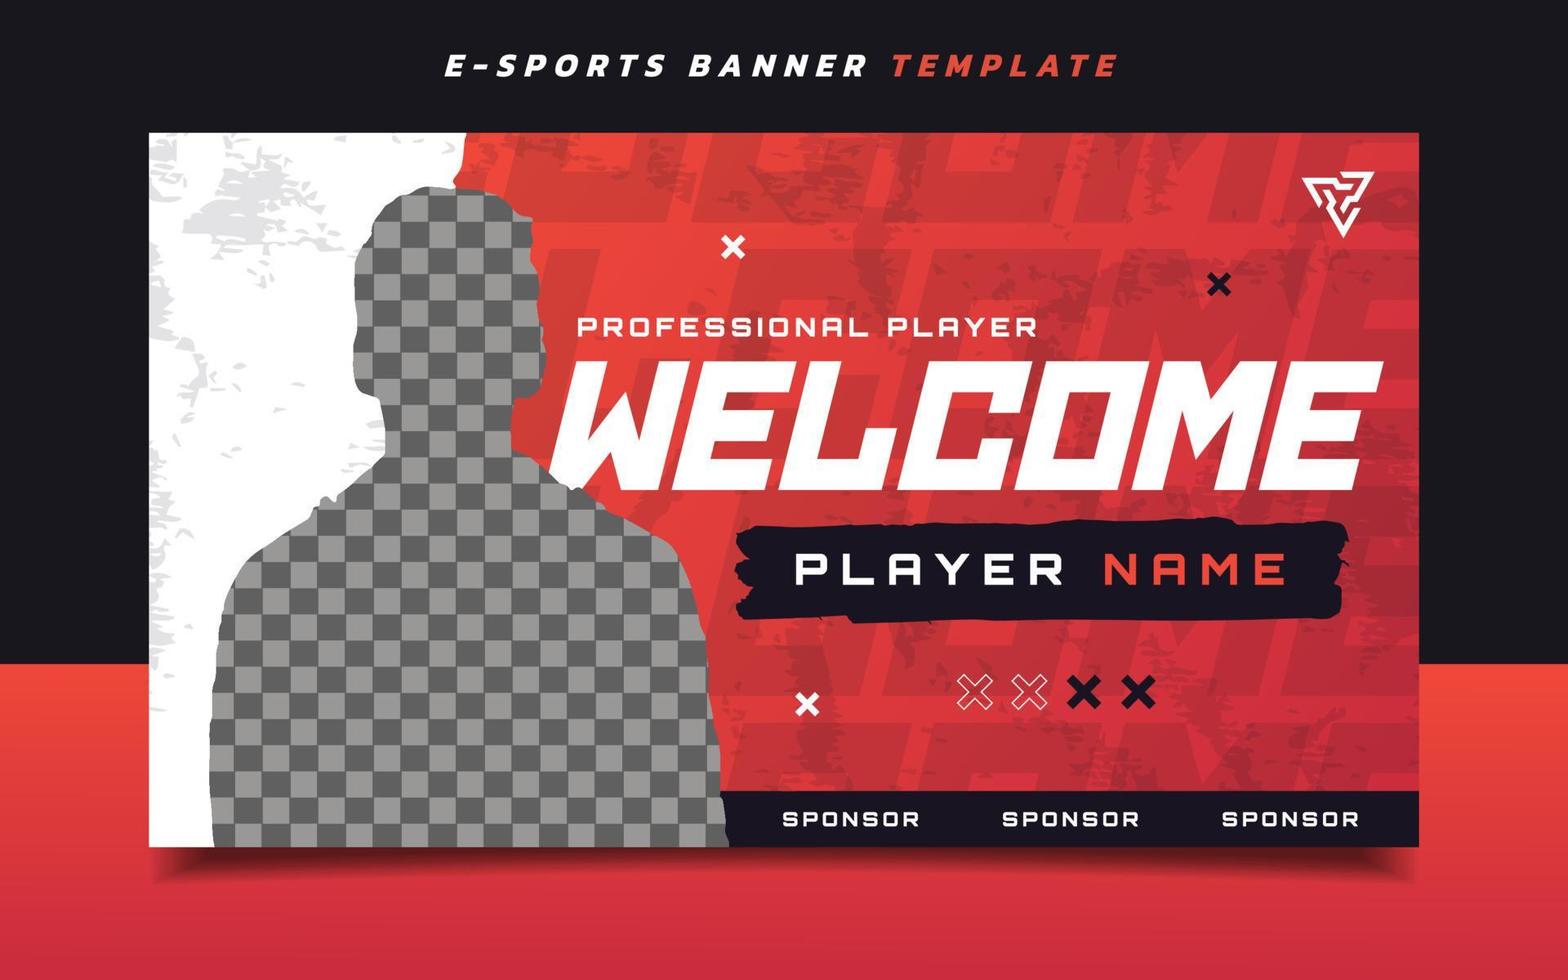 plantilla de banner de juegos de deportes electrónicos para nuevos jugadores para redes sociales vector